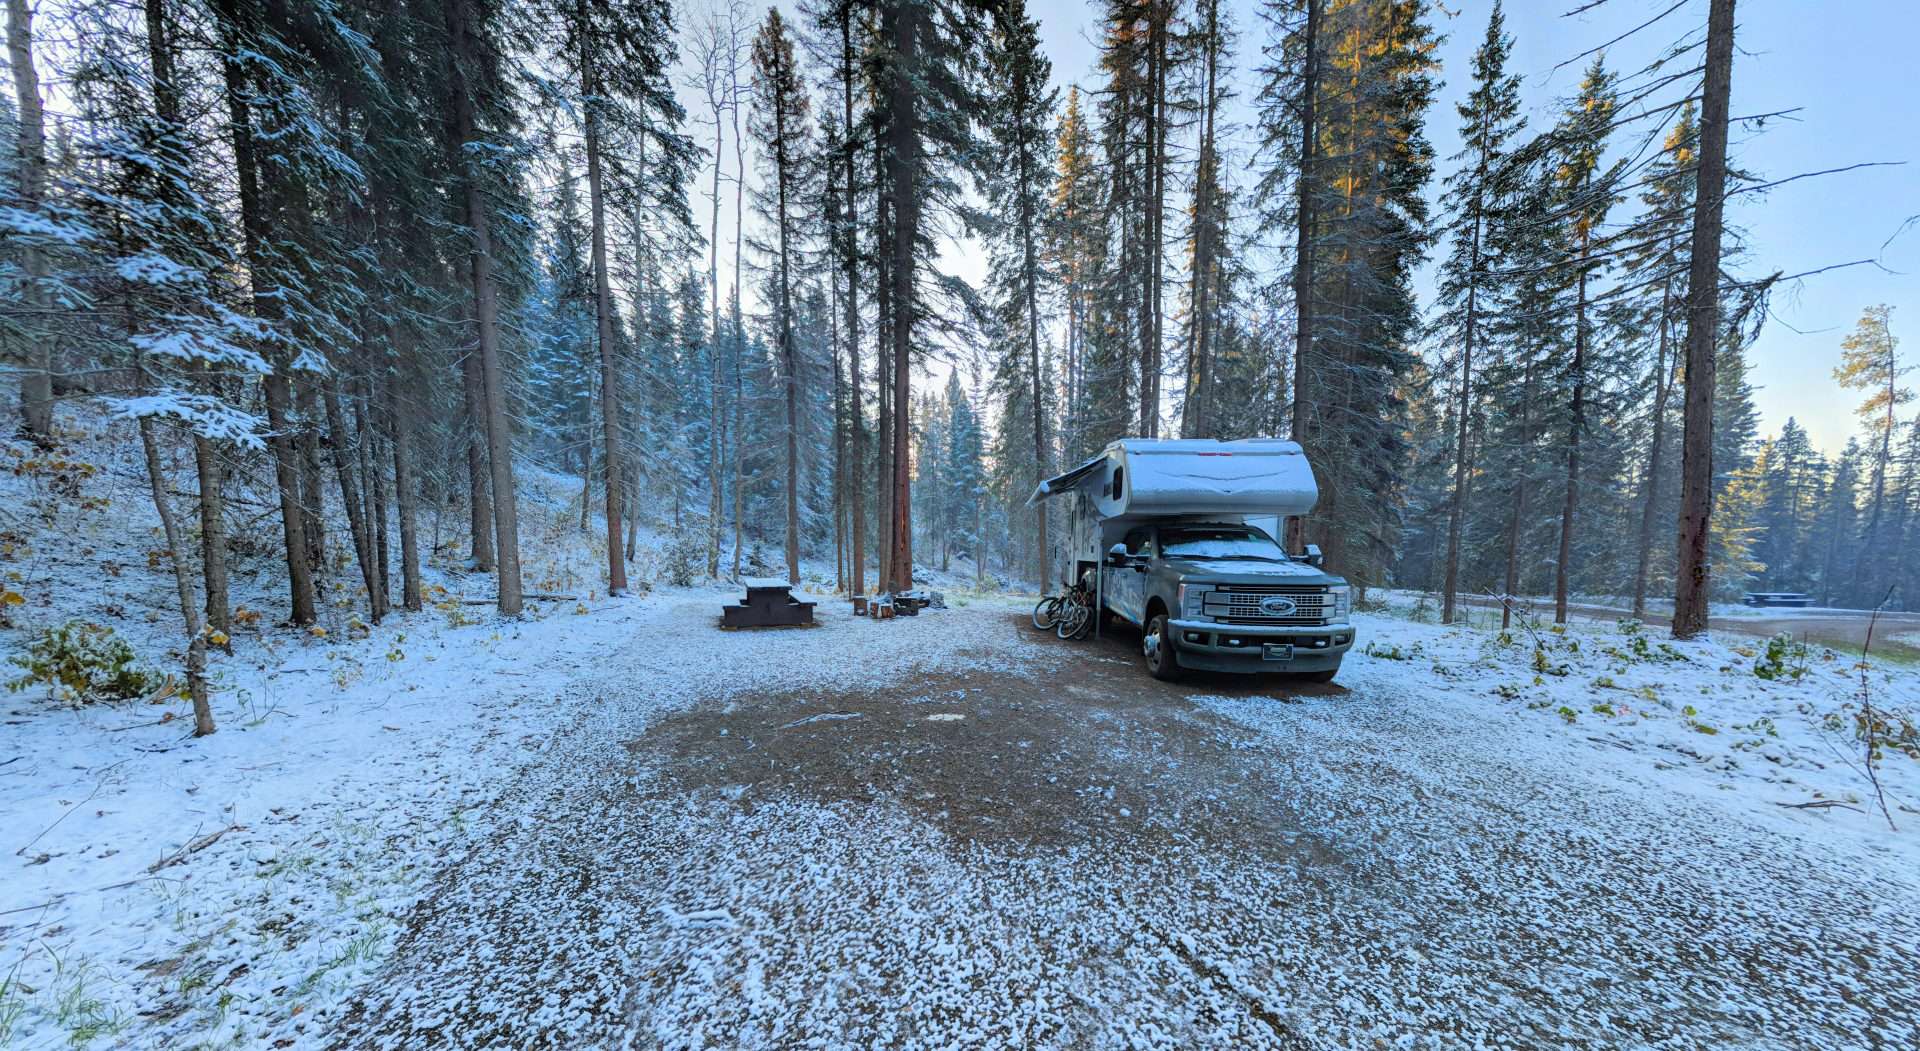 Truck camper in snowy campsite